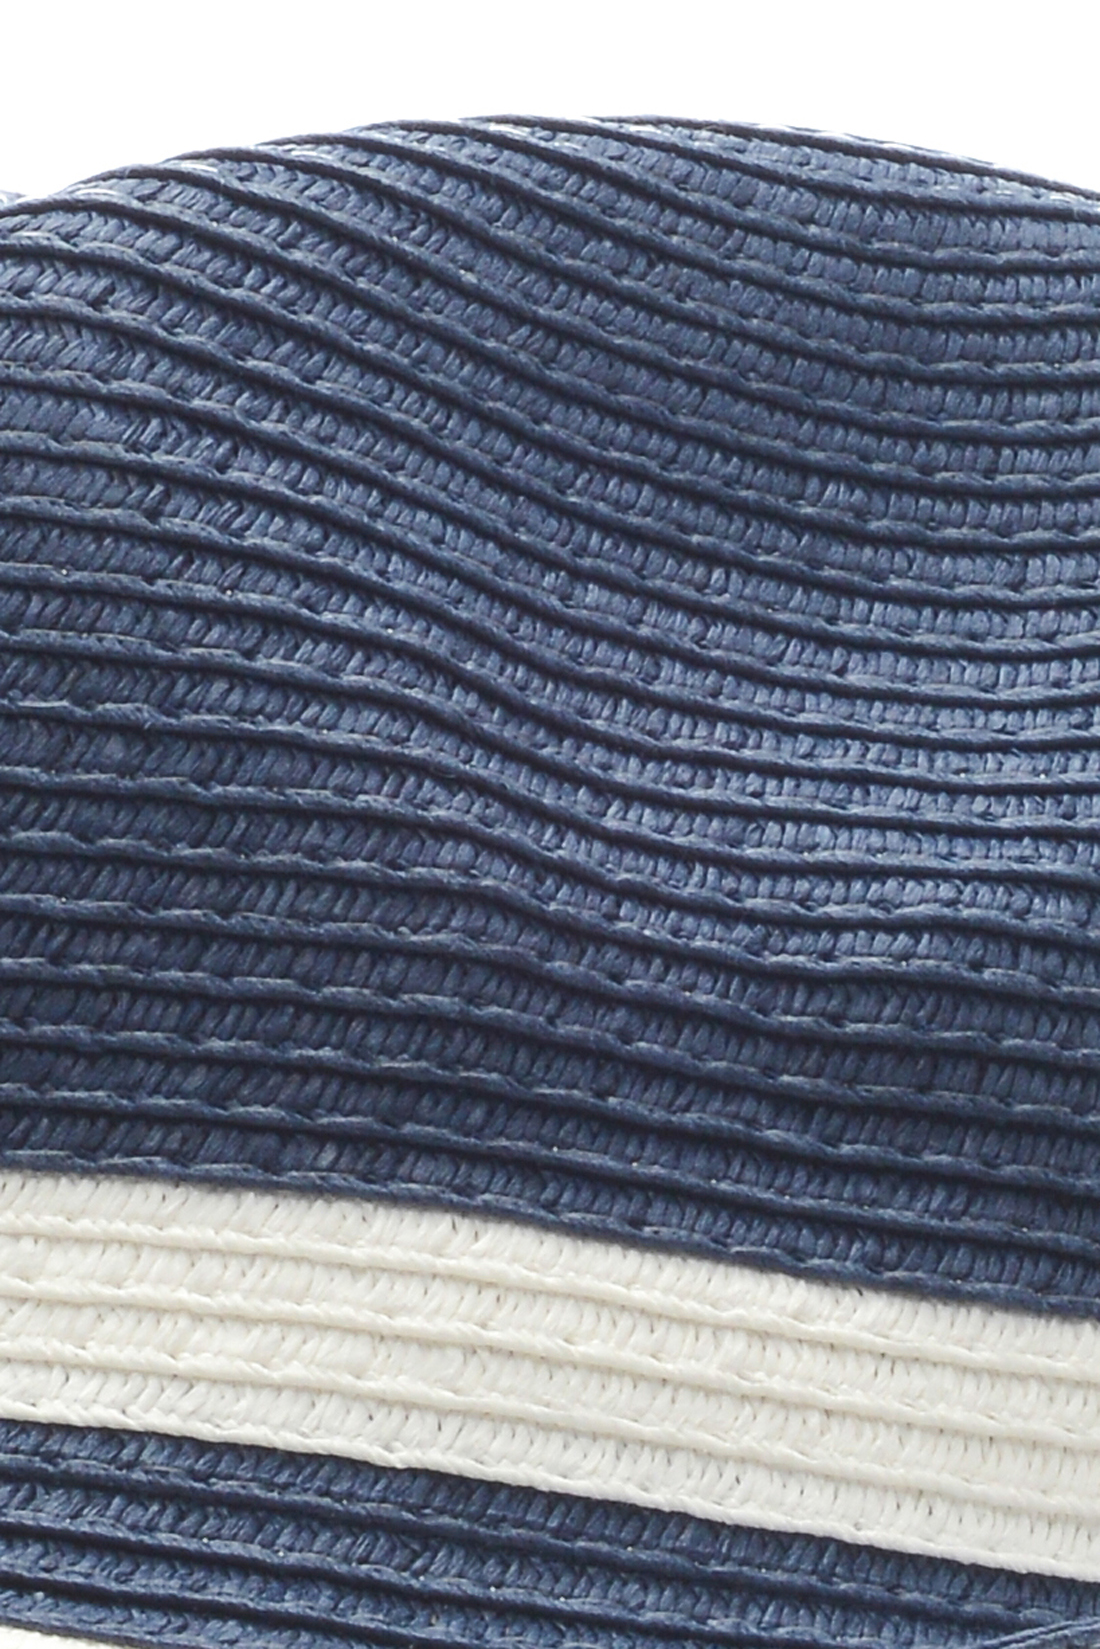 Шляпа в морском стиле (арт. baon B348003), размер Б/р 56, цвет синий Шляпа в морском стиле (арт. baon B348003) - фото 3